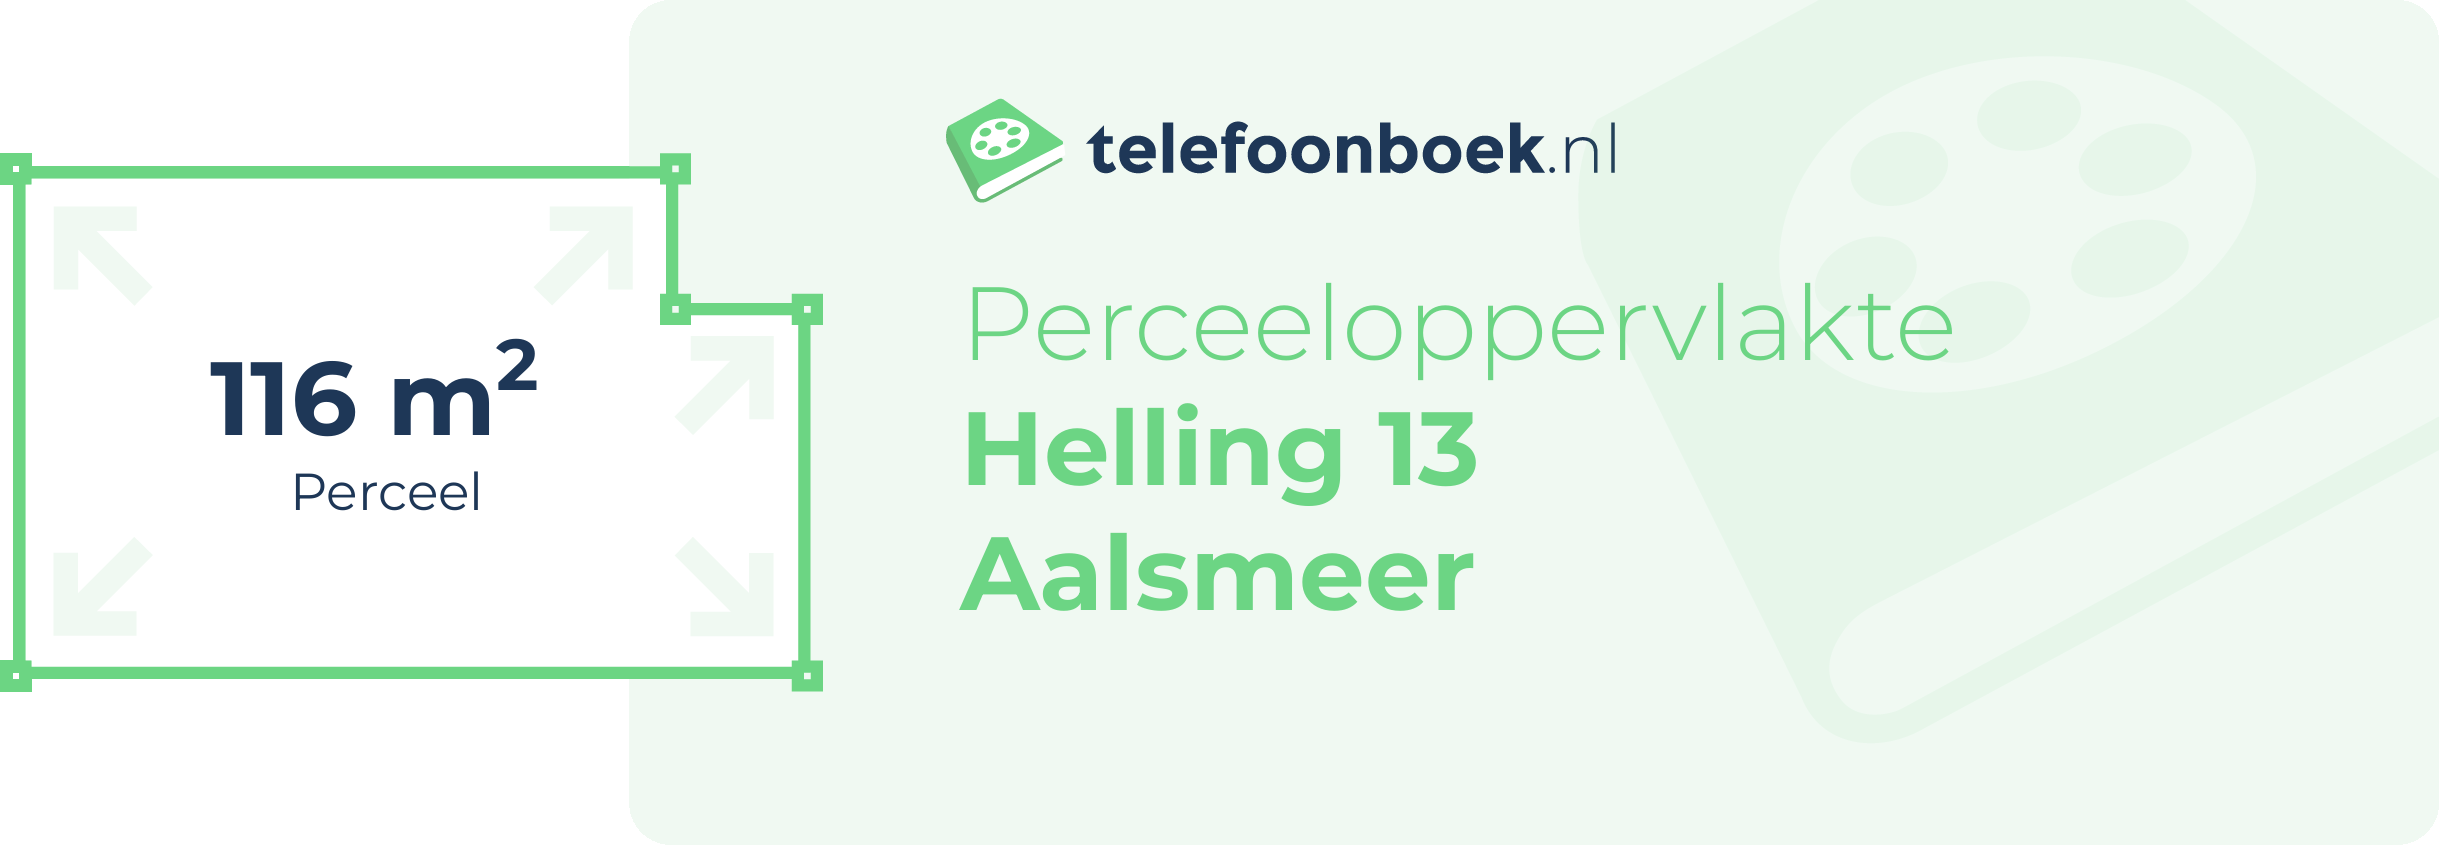 Perceeloppervlakte Helling 13 Aalsmeer